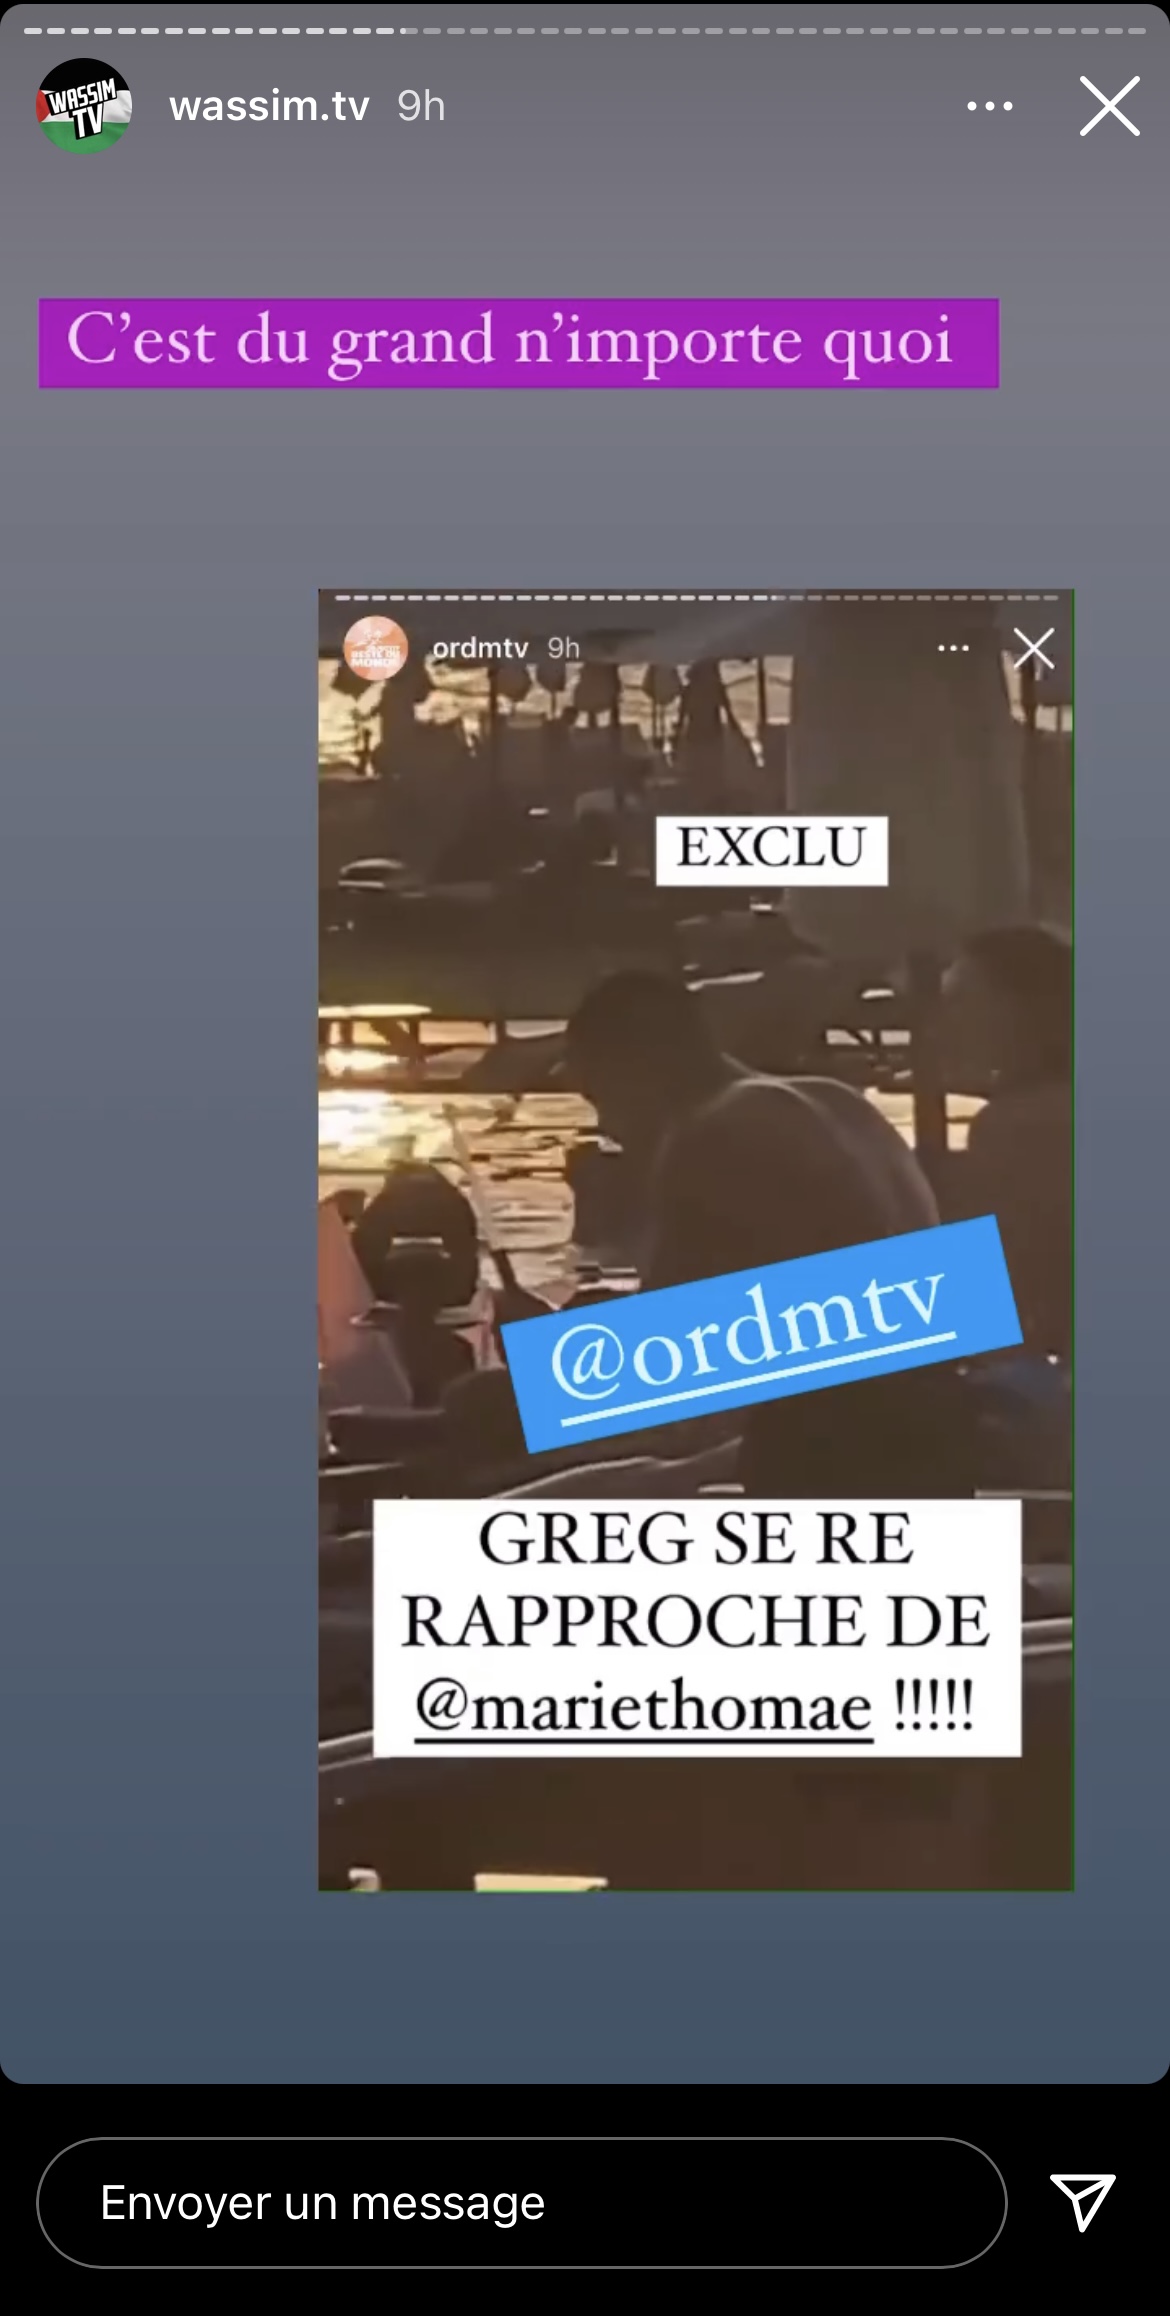  Greg se rapproche de Marie Thomae @ Instagram